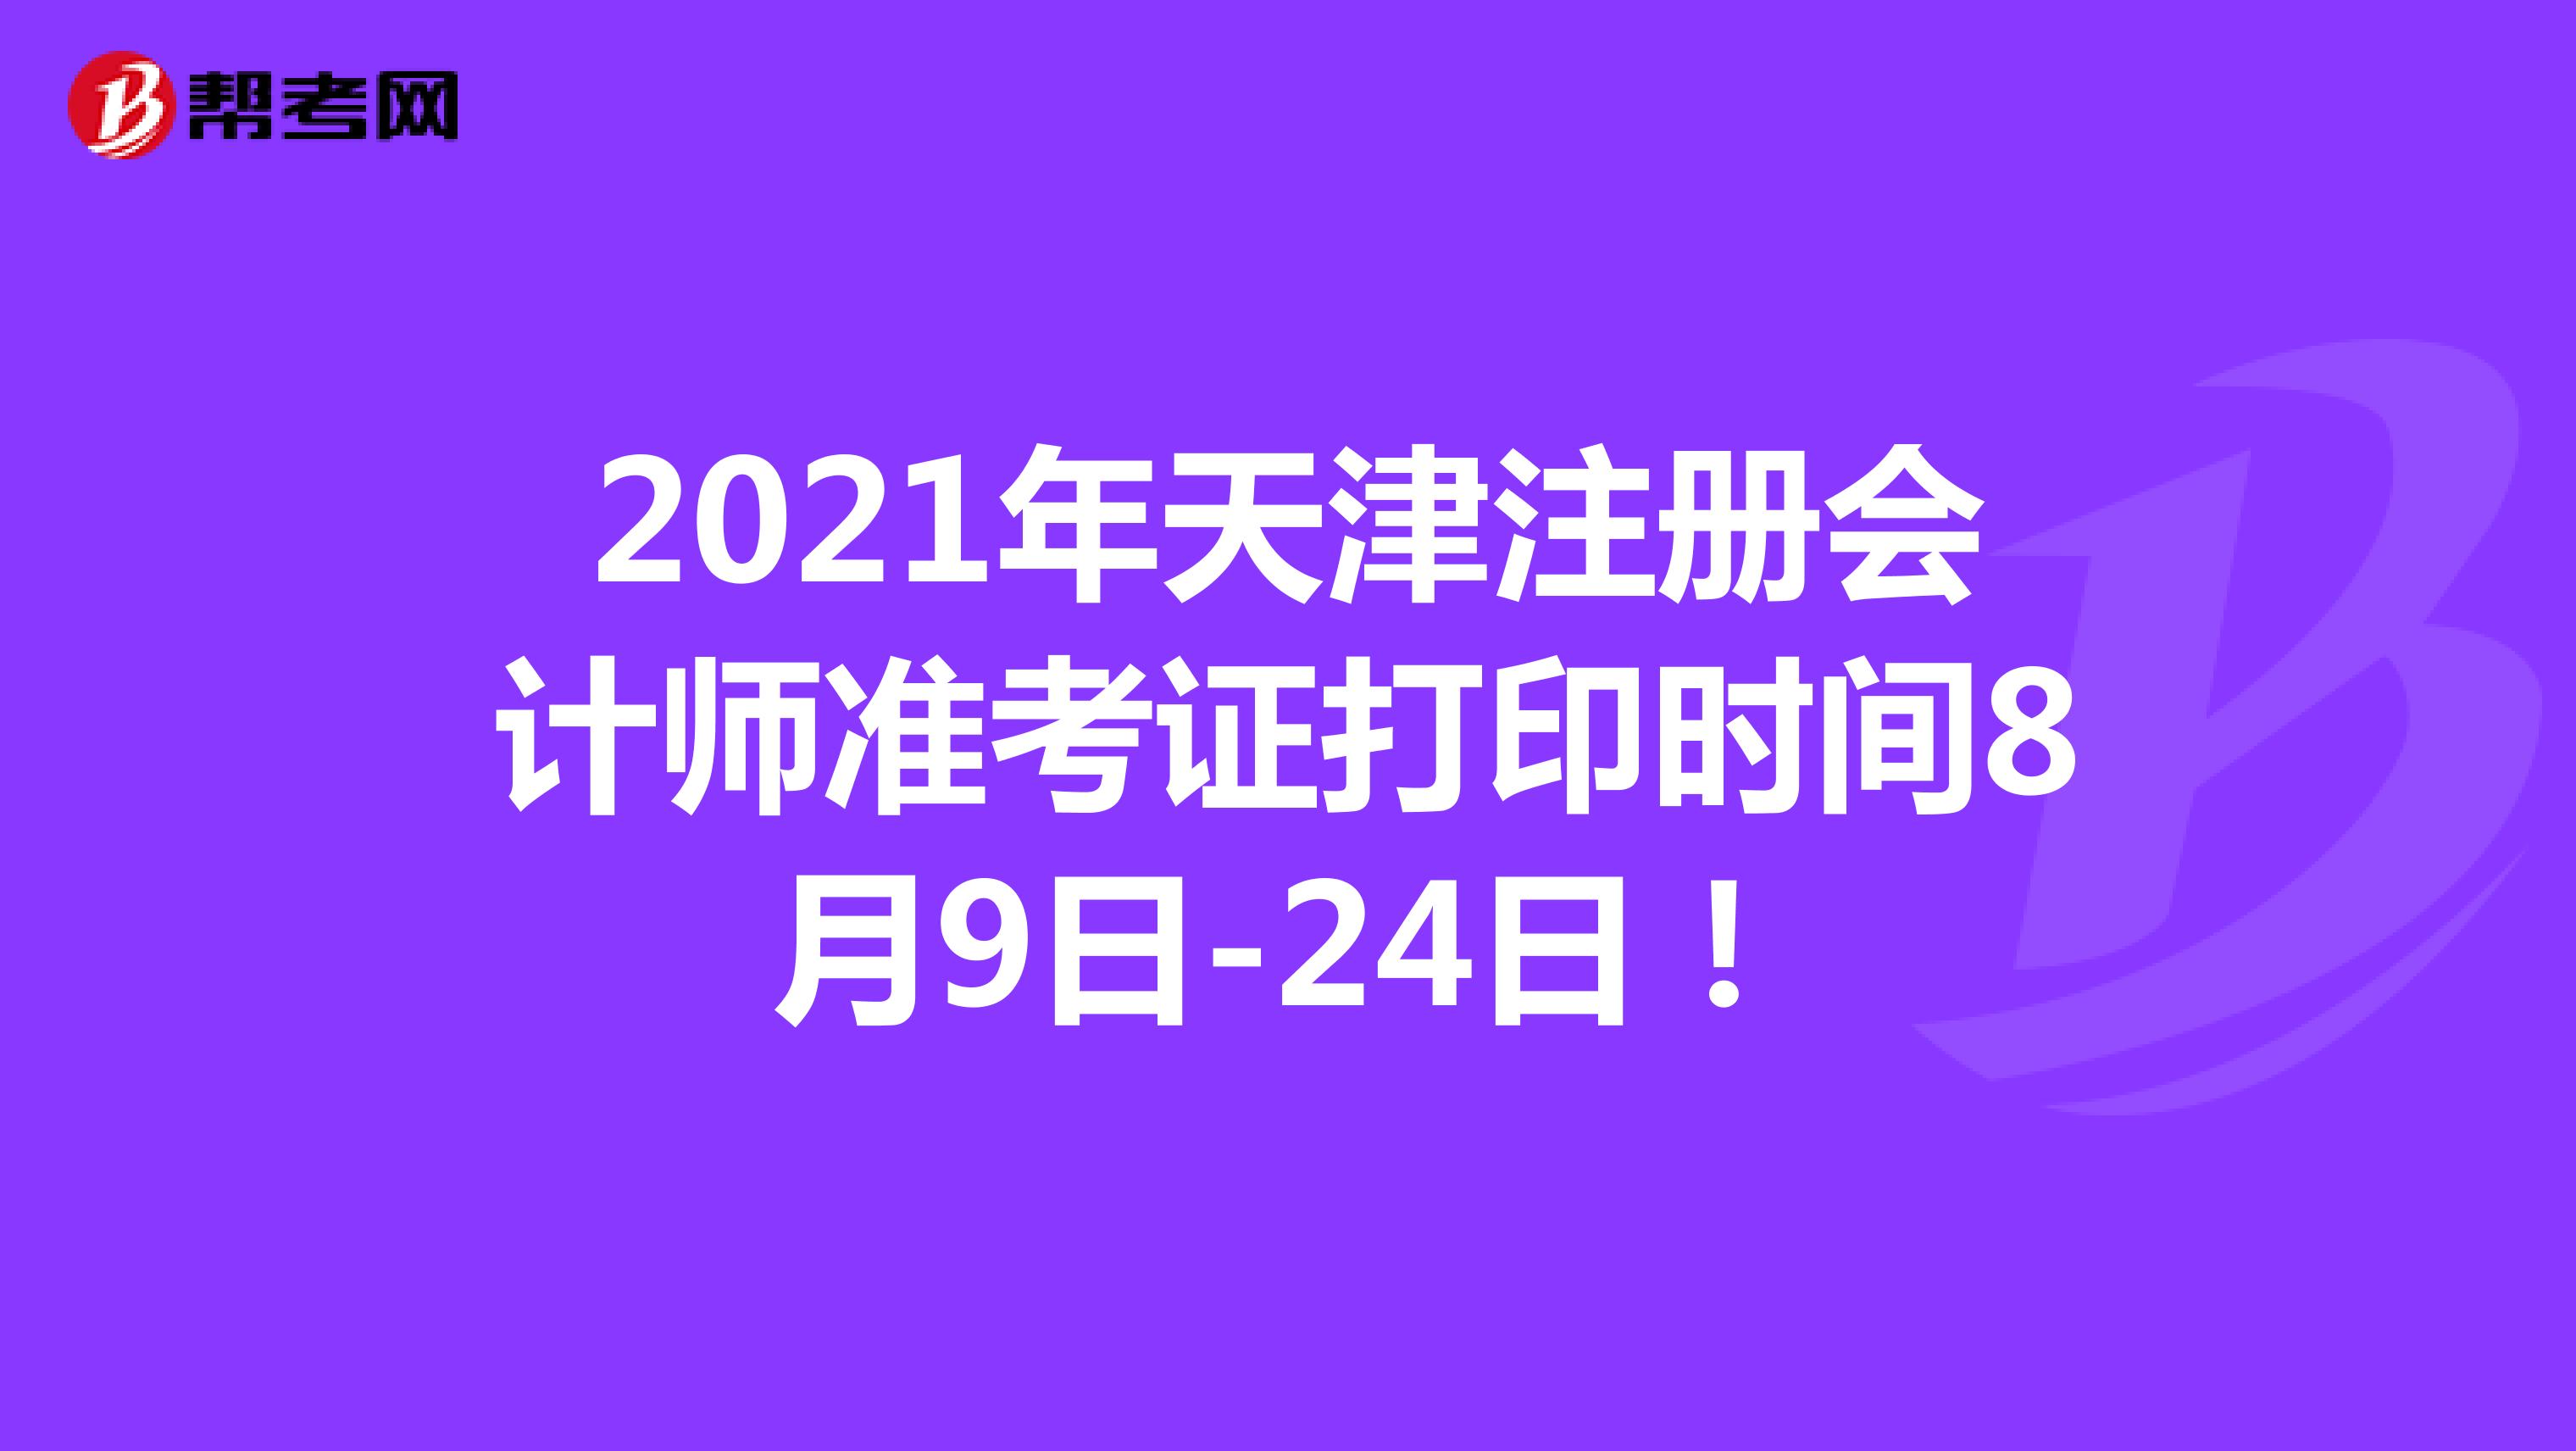 2021年天津注册会计师准考证打印时间8月9日-24日！